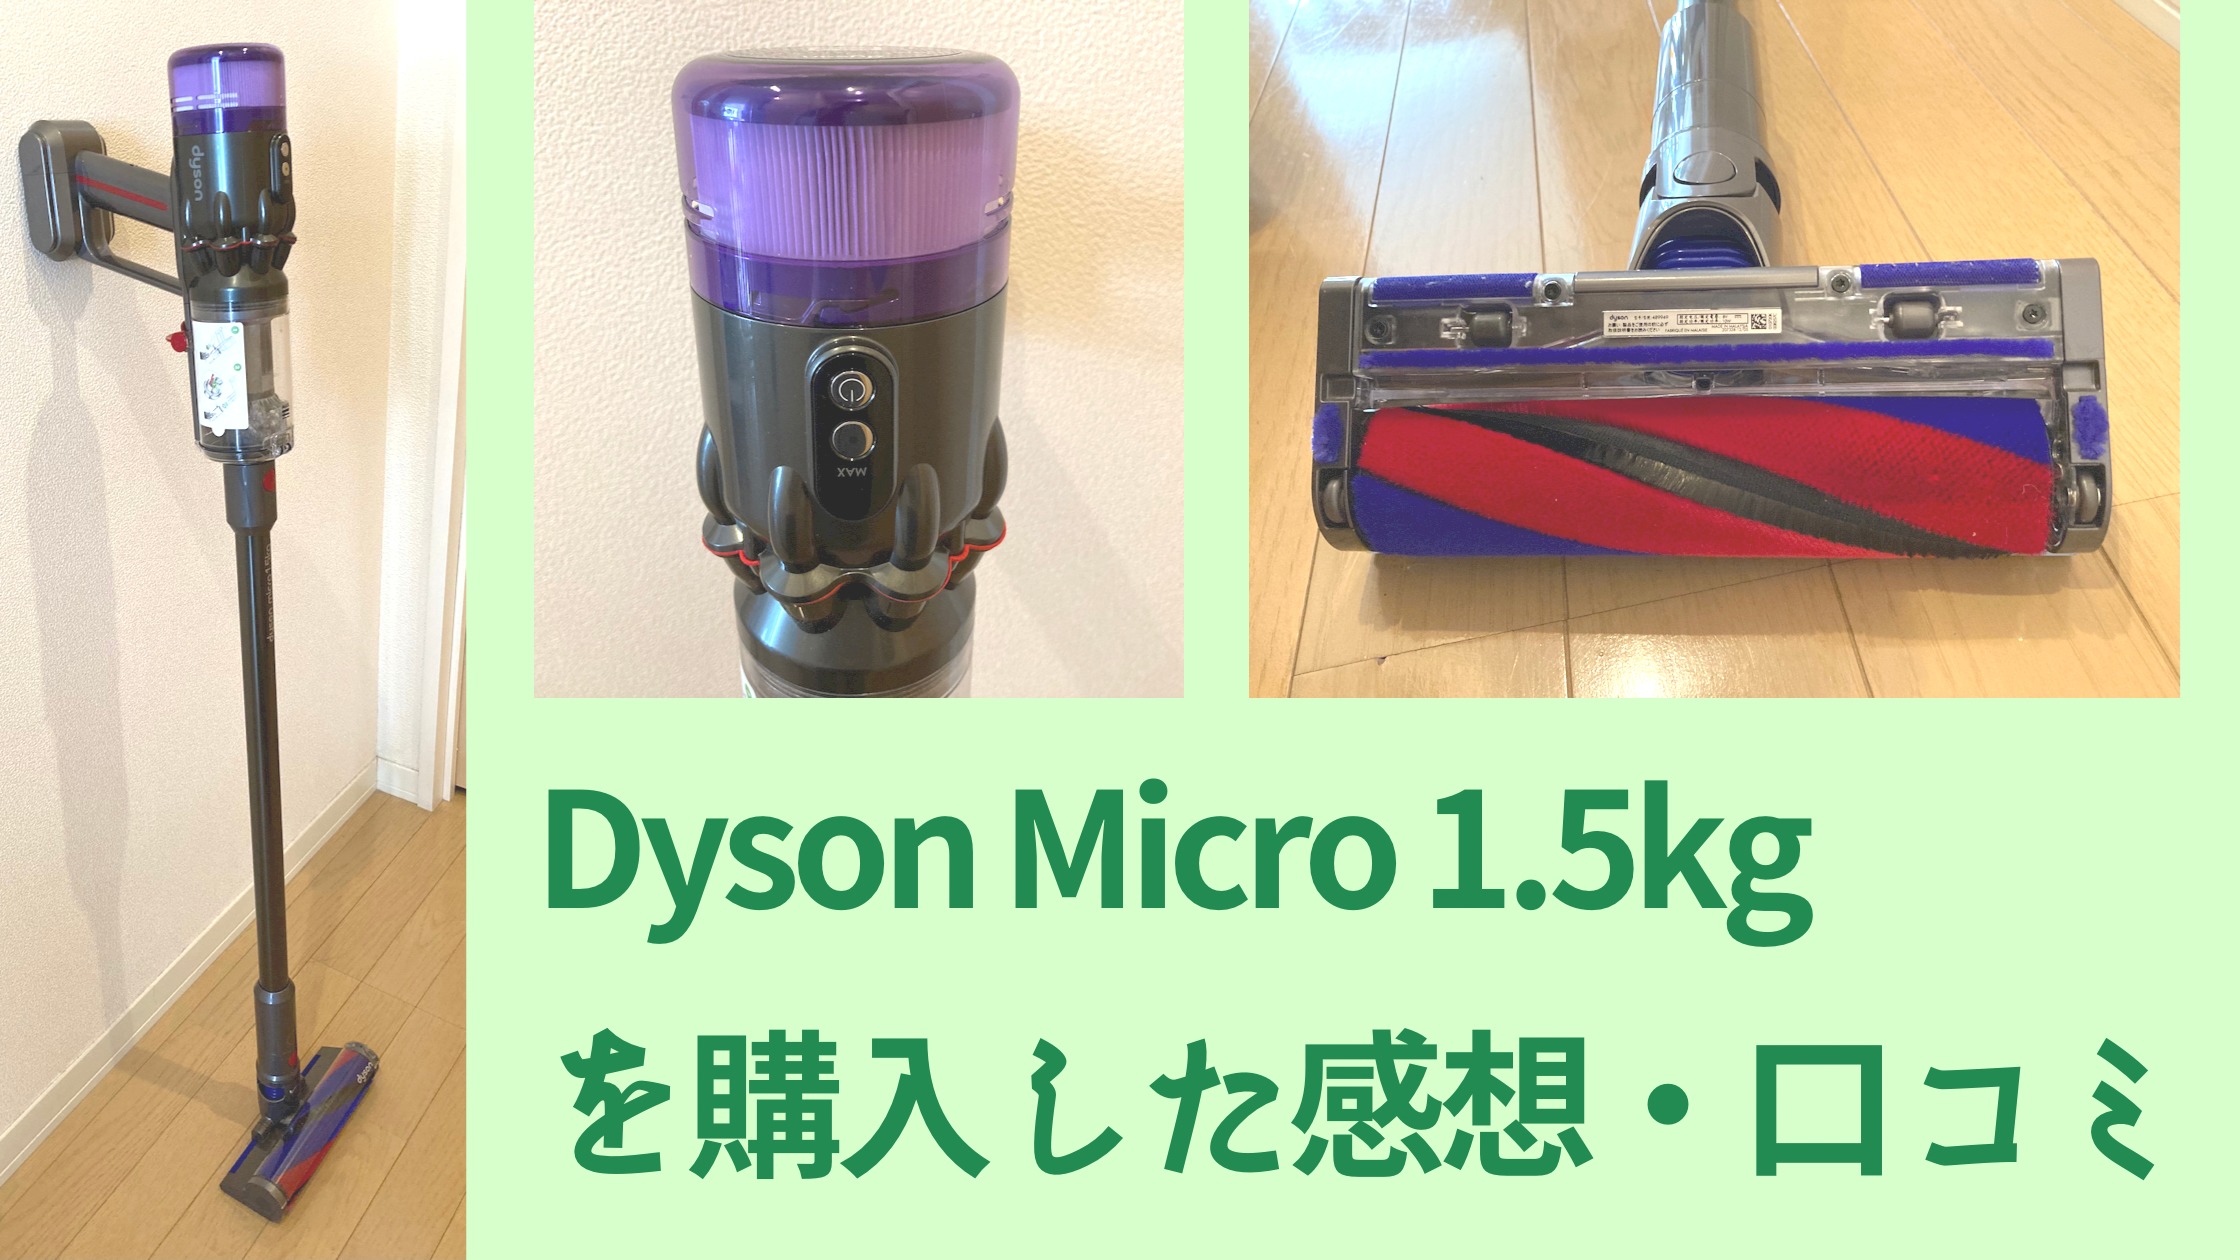 特売新入荷特価 ダイソン complete micro1.5kg 掃除機